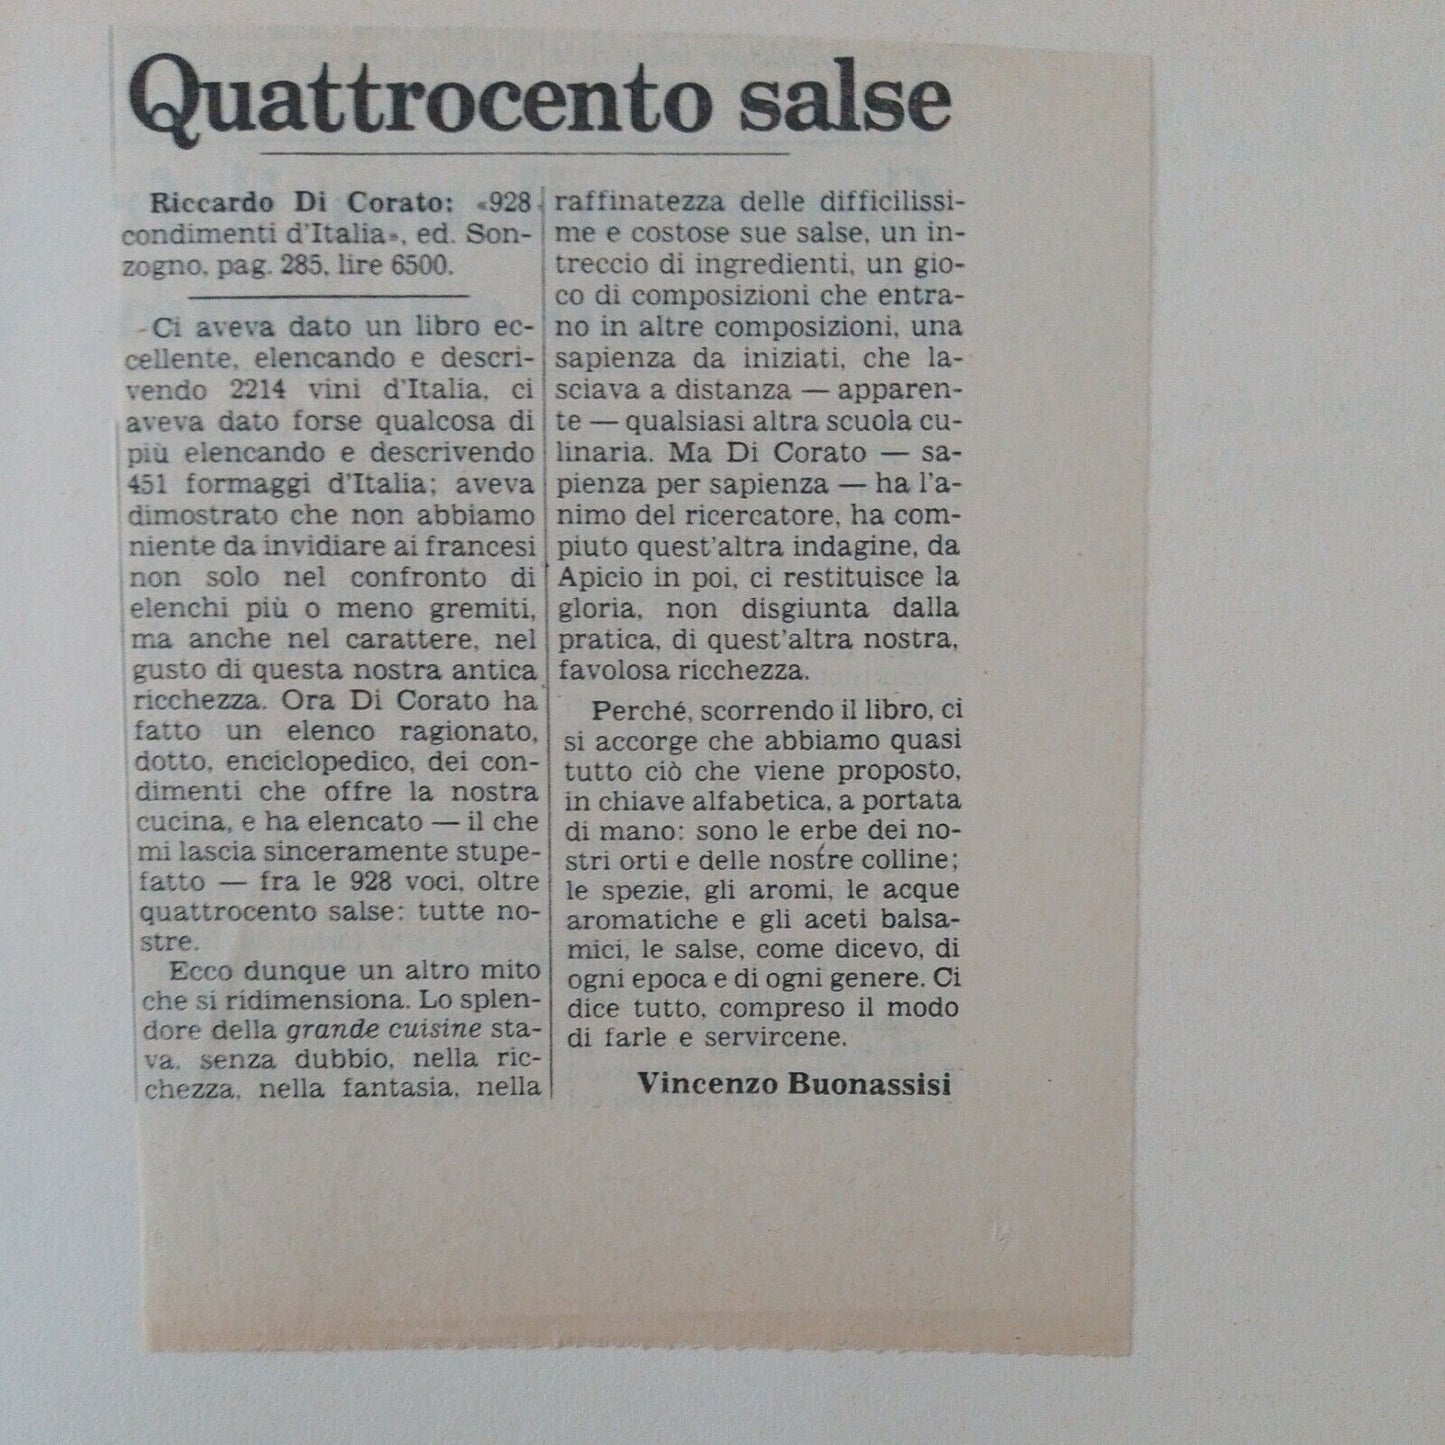 928 CONDIMENTS D'ITALIE, Riccardo Di Corato, SONZOGNO 1978